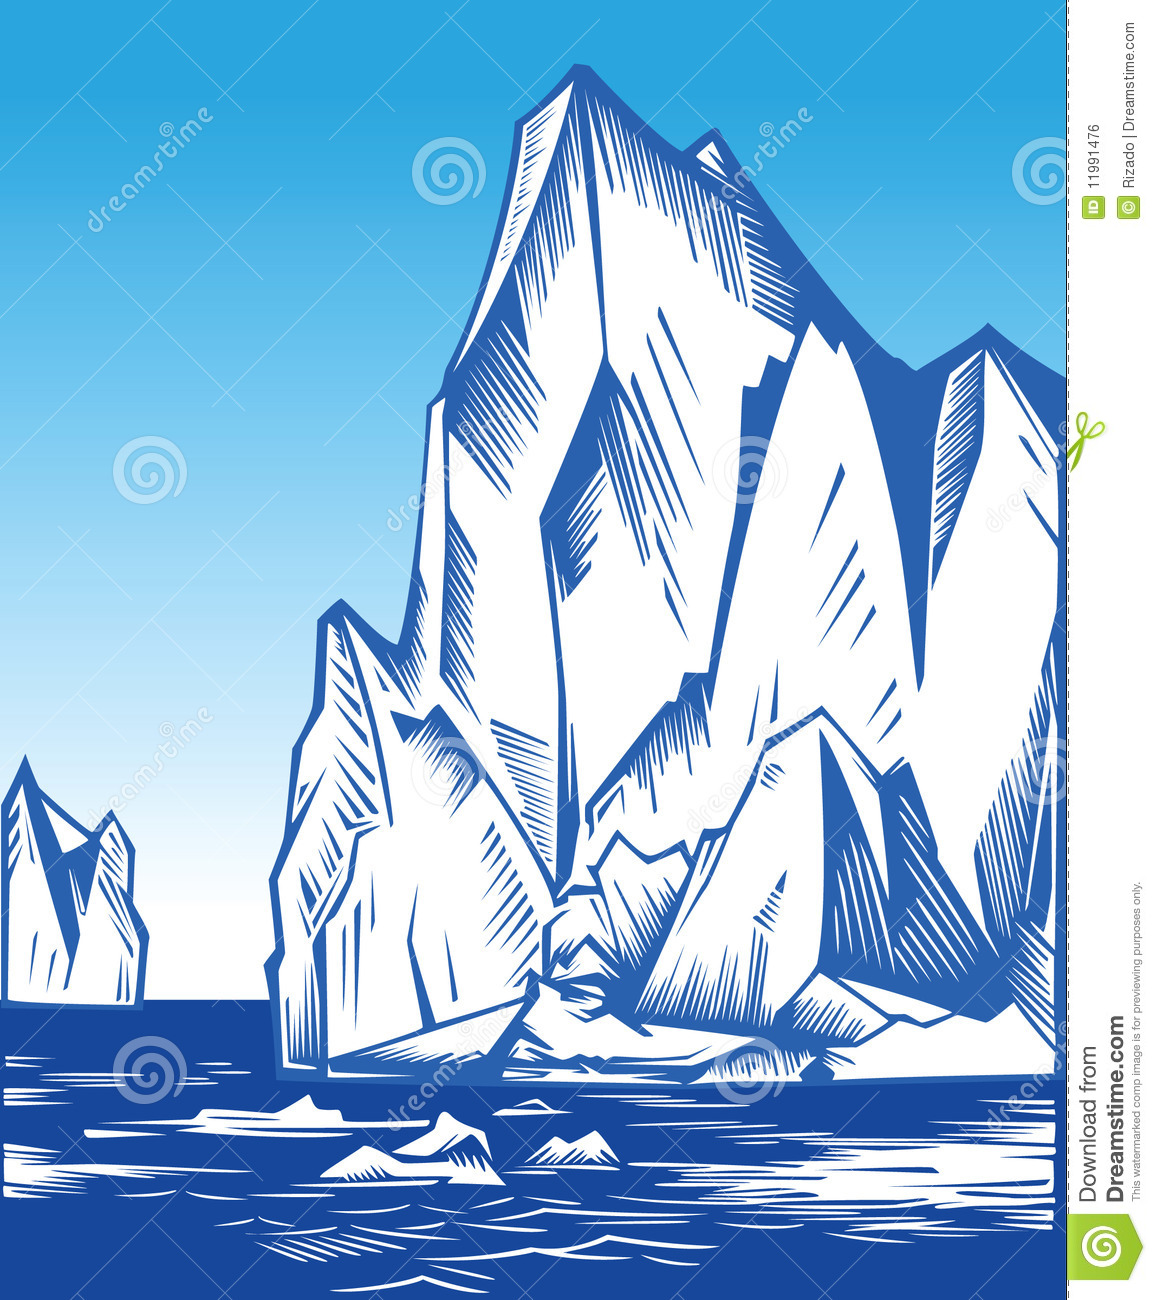 Iceberg Royalty Free Stock Image   Image  11991476